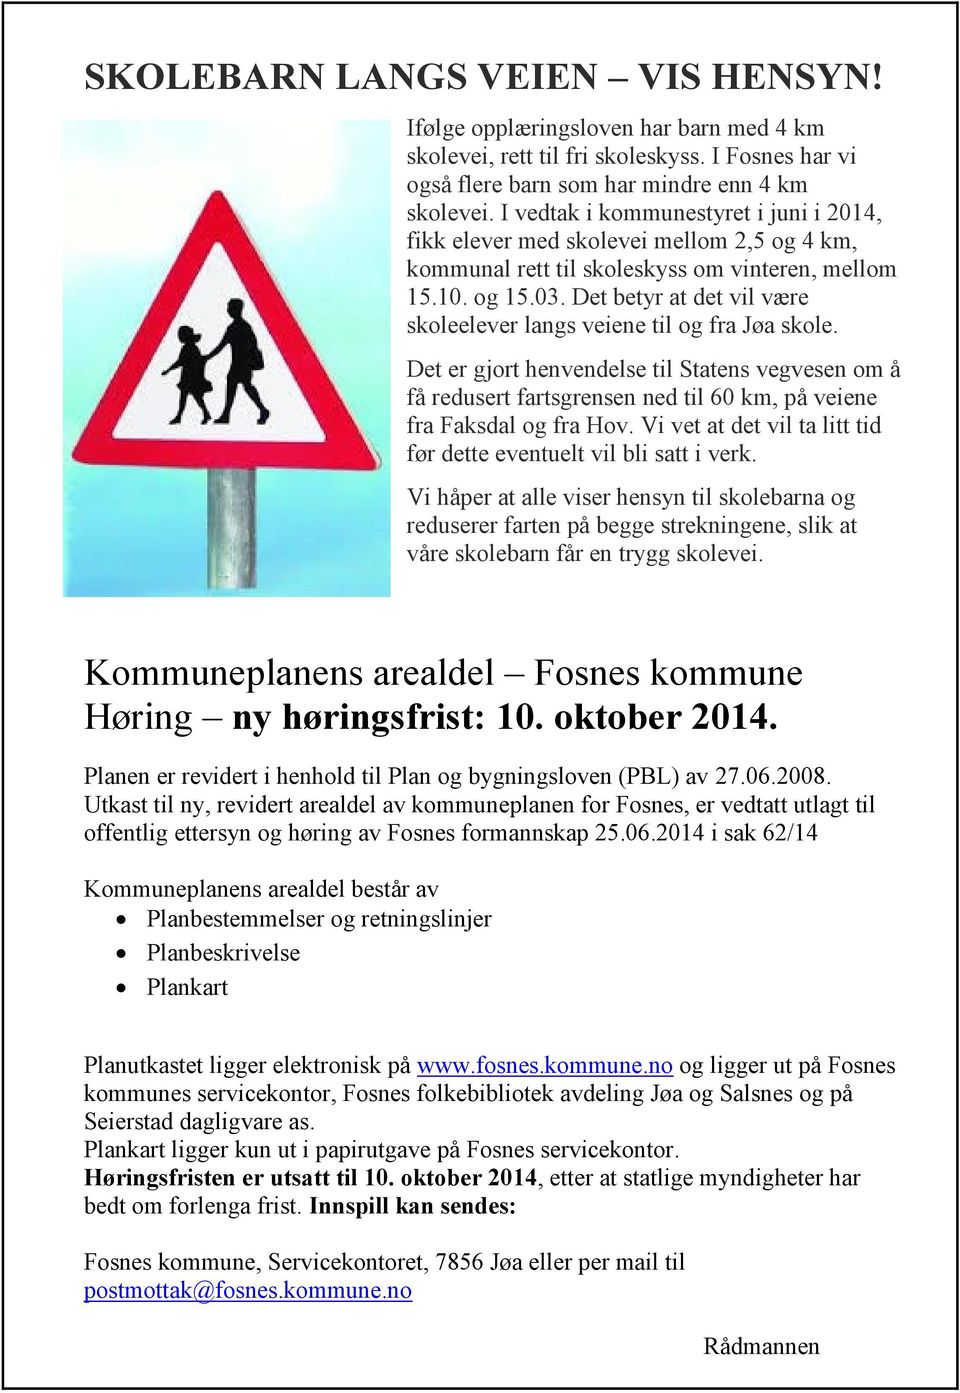 Det betyr at det vil være skoleelever langs veiene til og fra Jøa skole. Det er gjort henvendelse til Statens vegvesen om å få redusert fartsgrensen ned til 60 km, på veiene fra Faksdal og fra Hov.